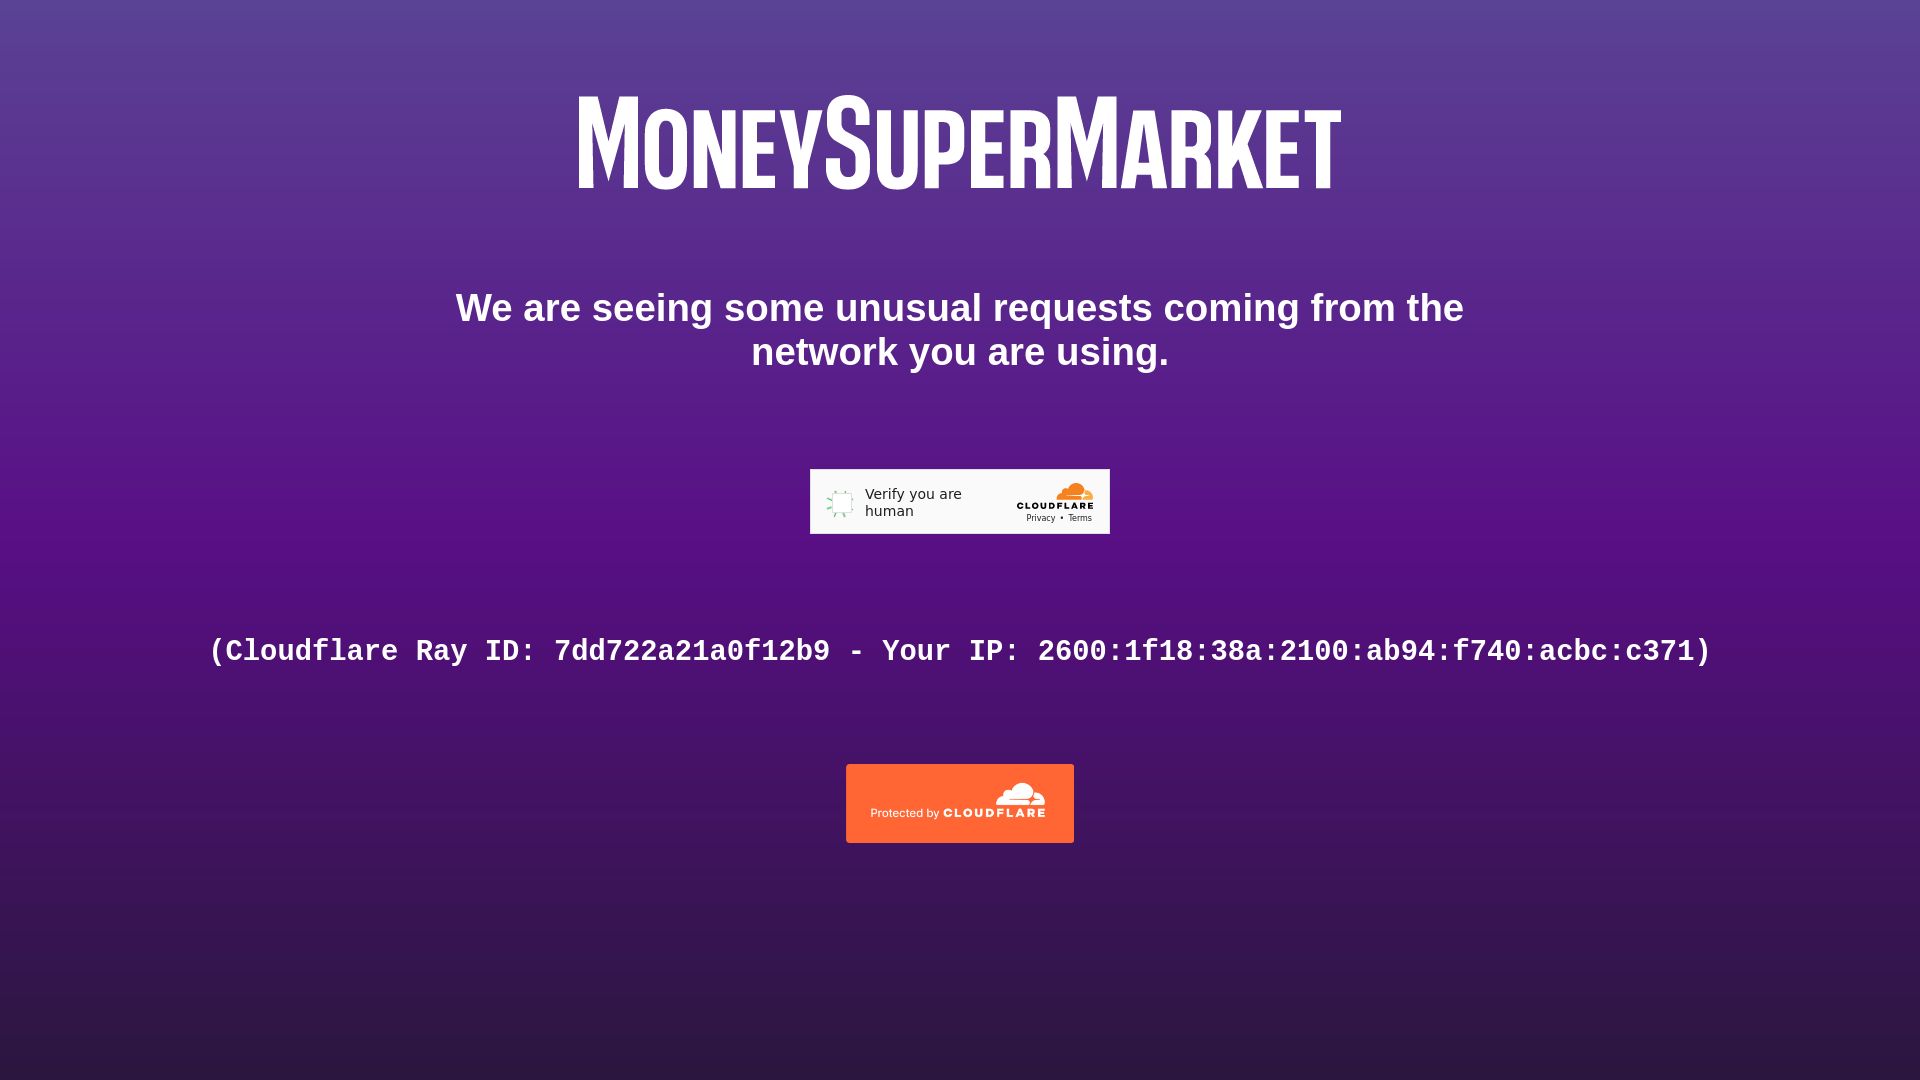 État du site web moneysupermarket.com est   EN LIGNE